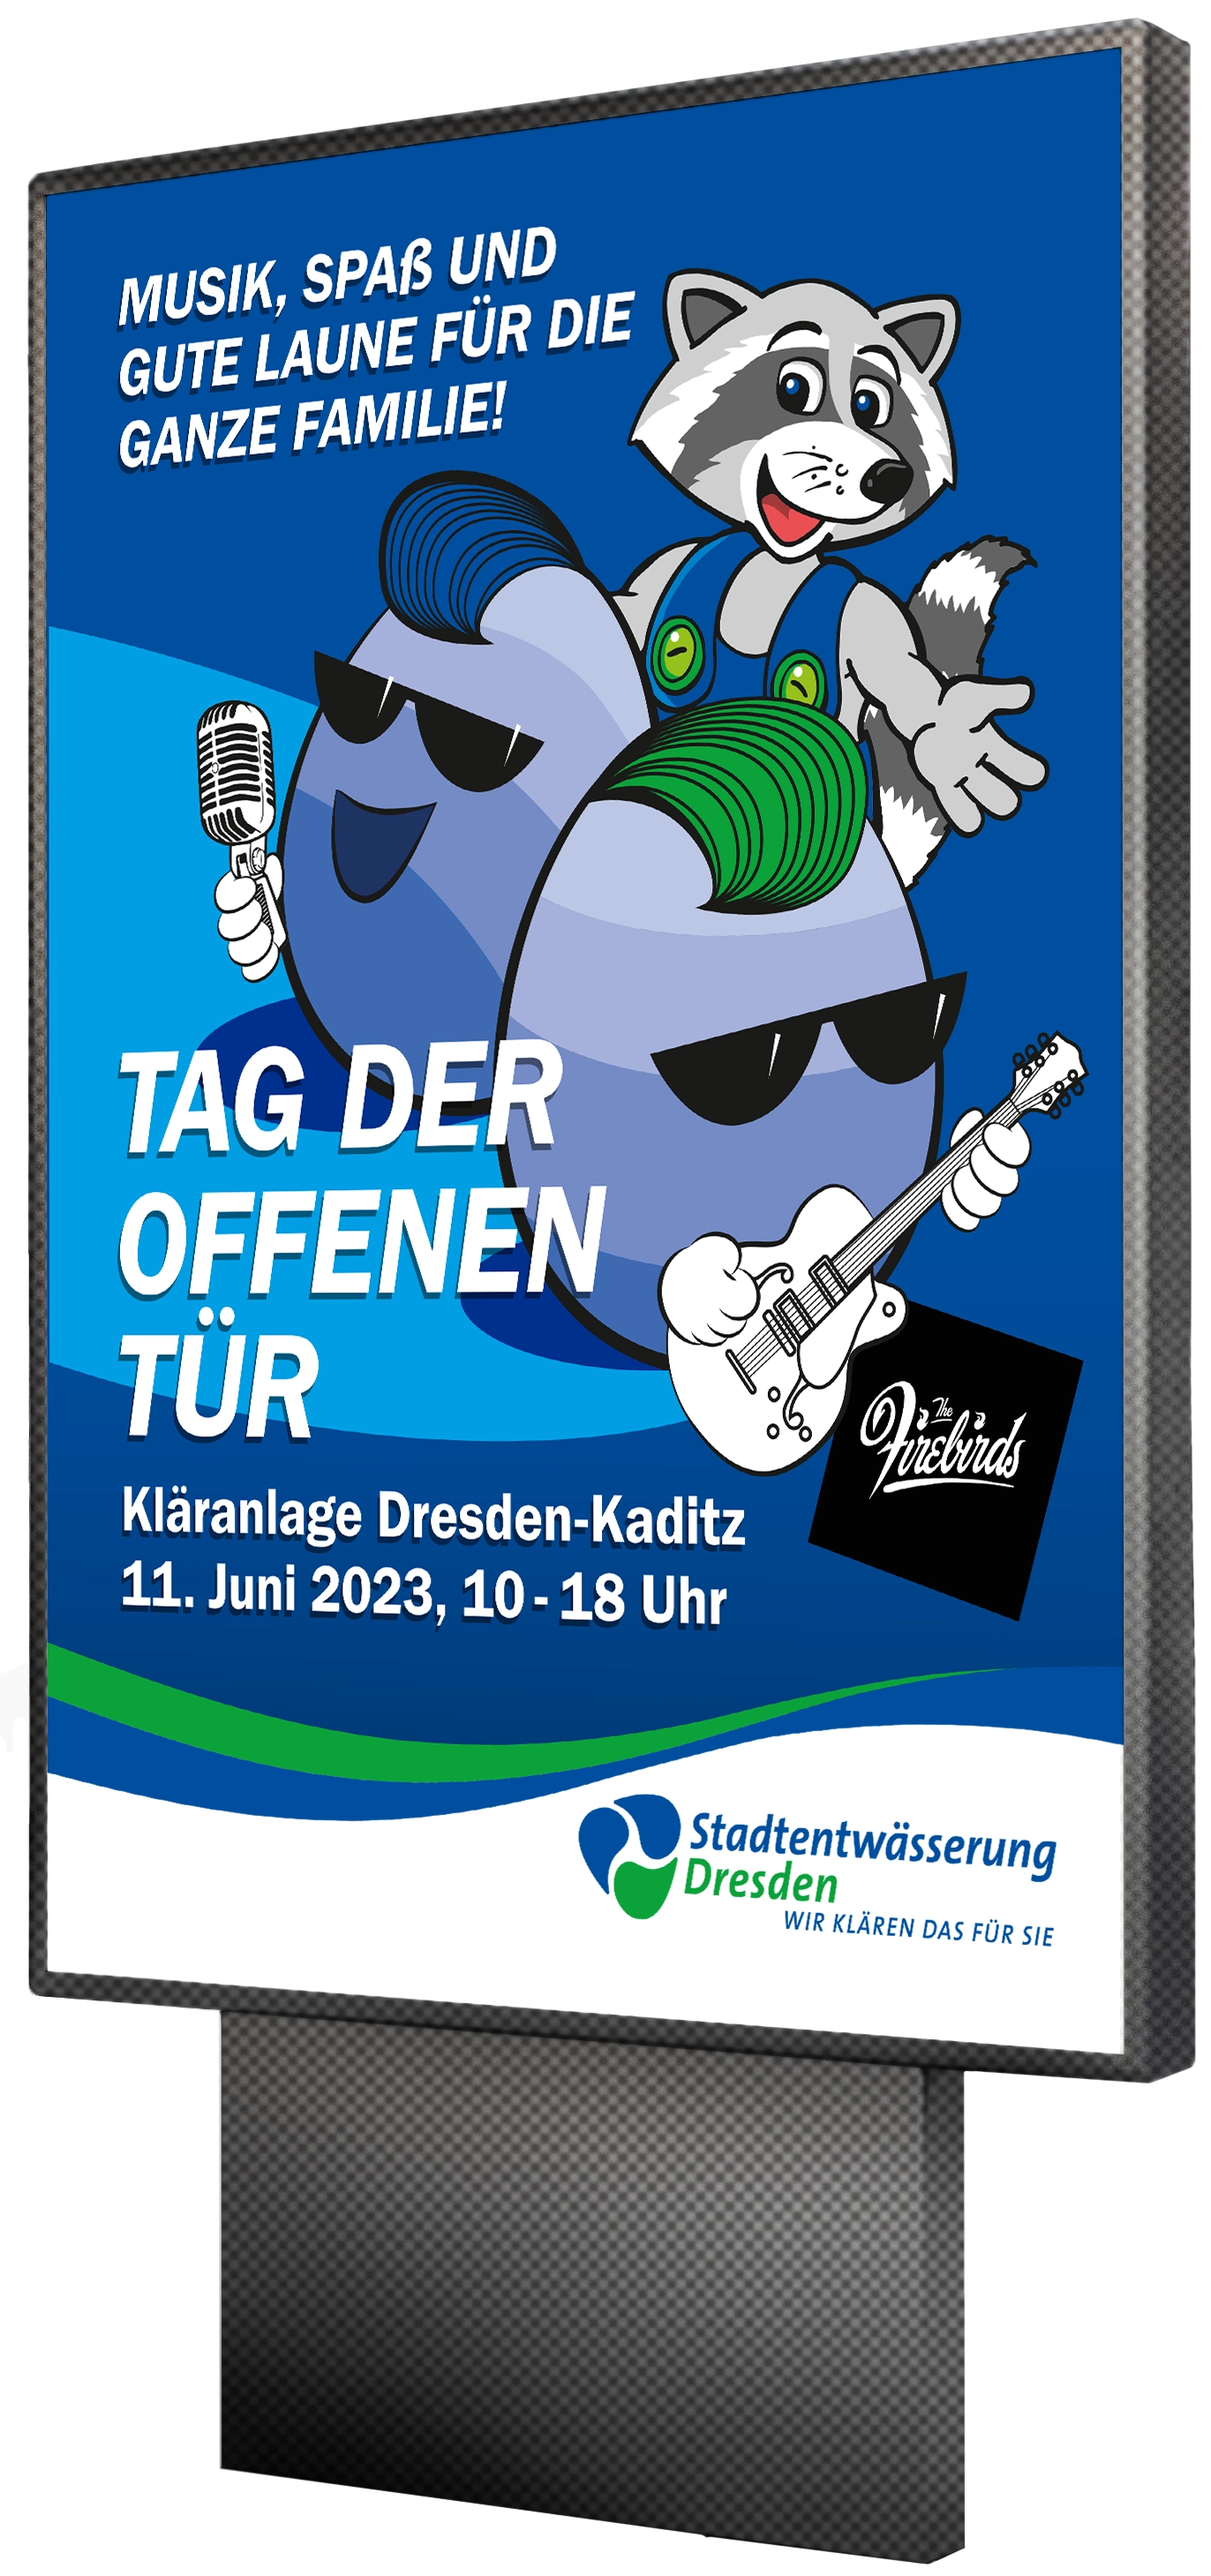 Plakatgestaltung für die Stadtentwaesserung Dresden made by Feuerpanda Werbeagentur Dresden